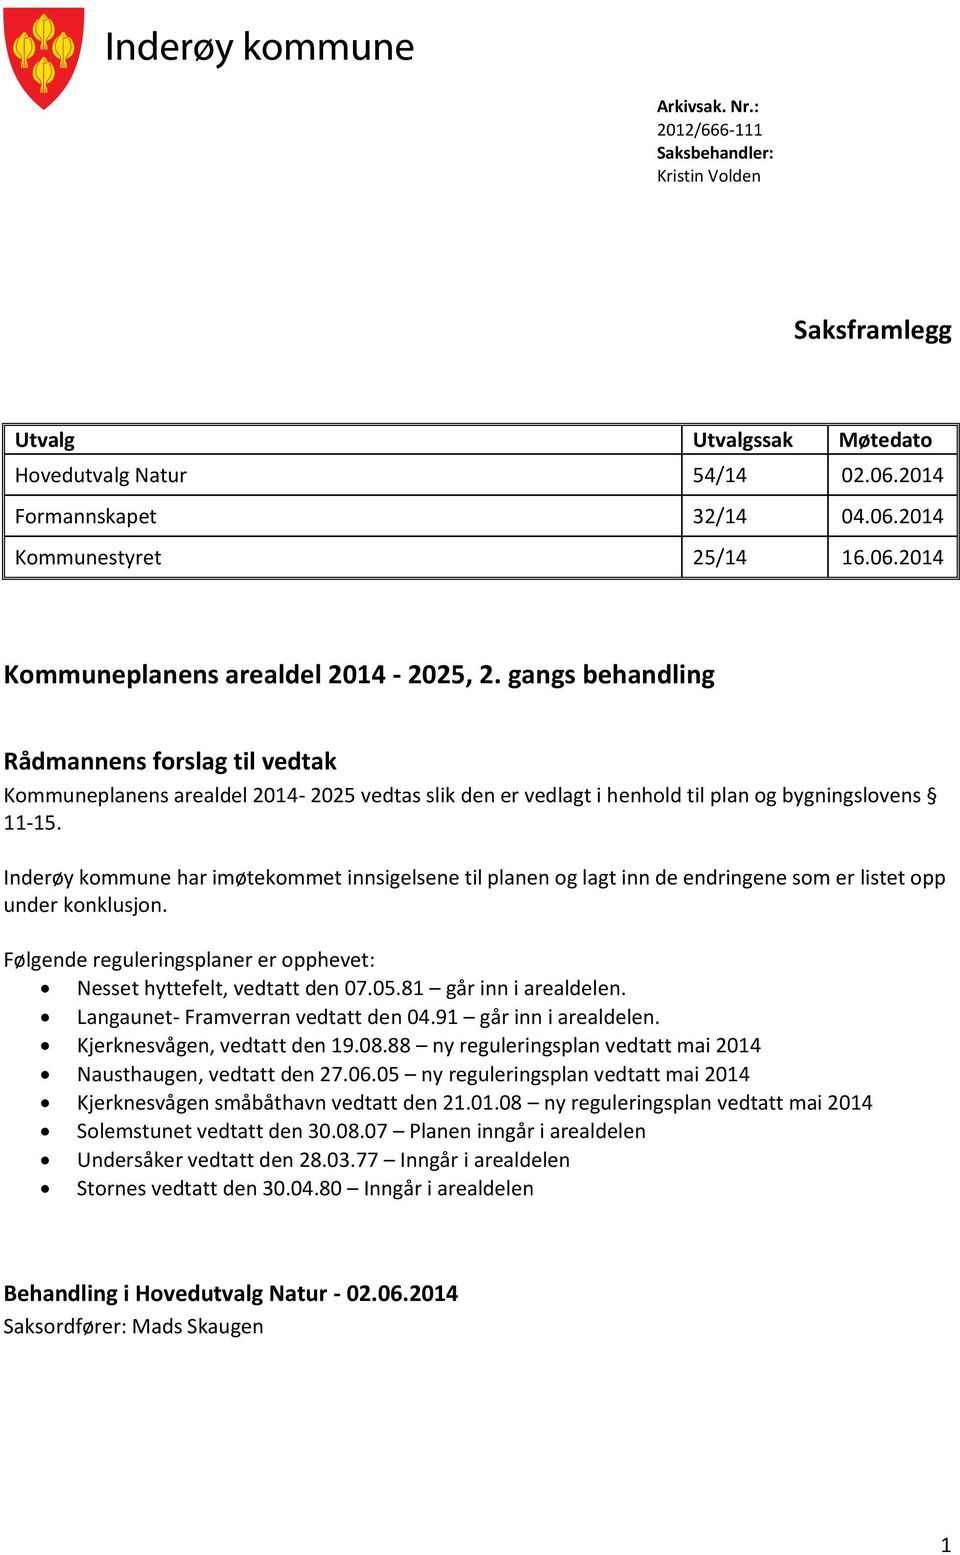 Inderøy kommune har imøtekommet innsigelsene til planen og lagt inn de endringene som er listet opp under konklusjon. Følgende reguleringsplaner er opphevet: Nesset hyttefelt, vedtatt den 07.05.